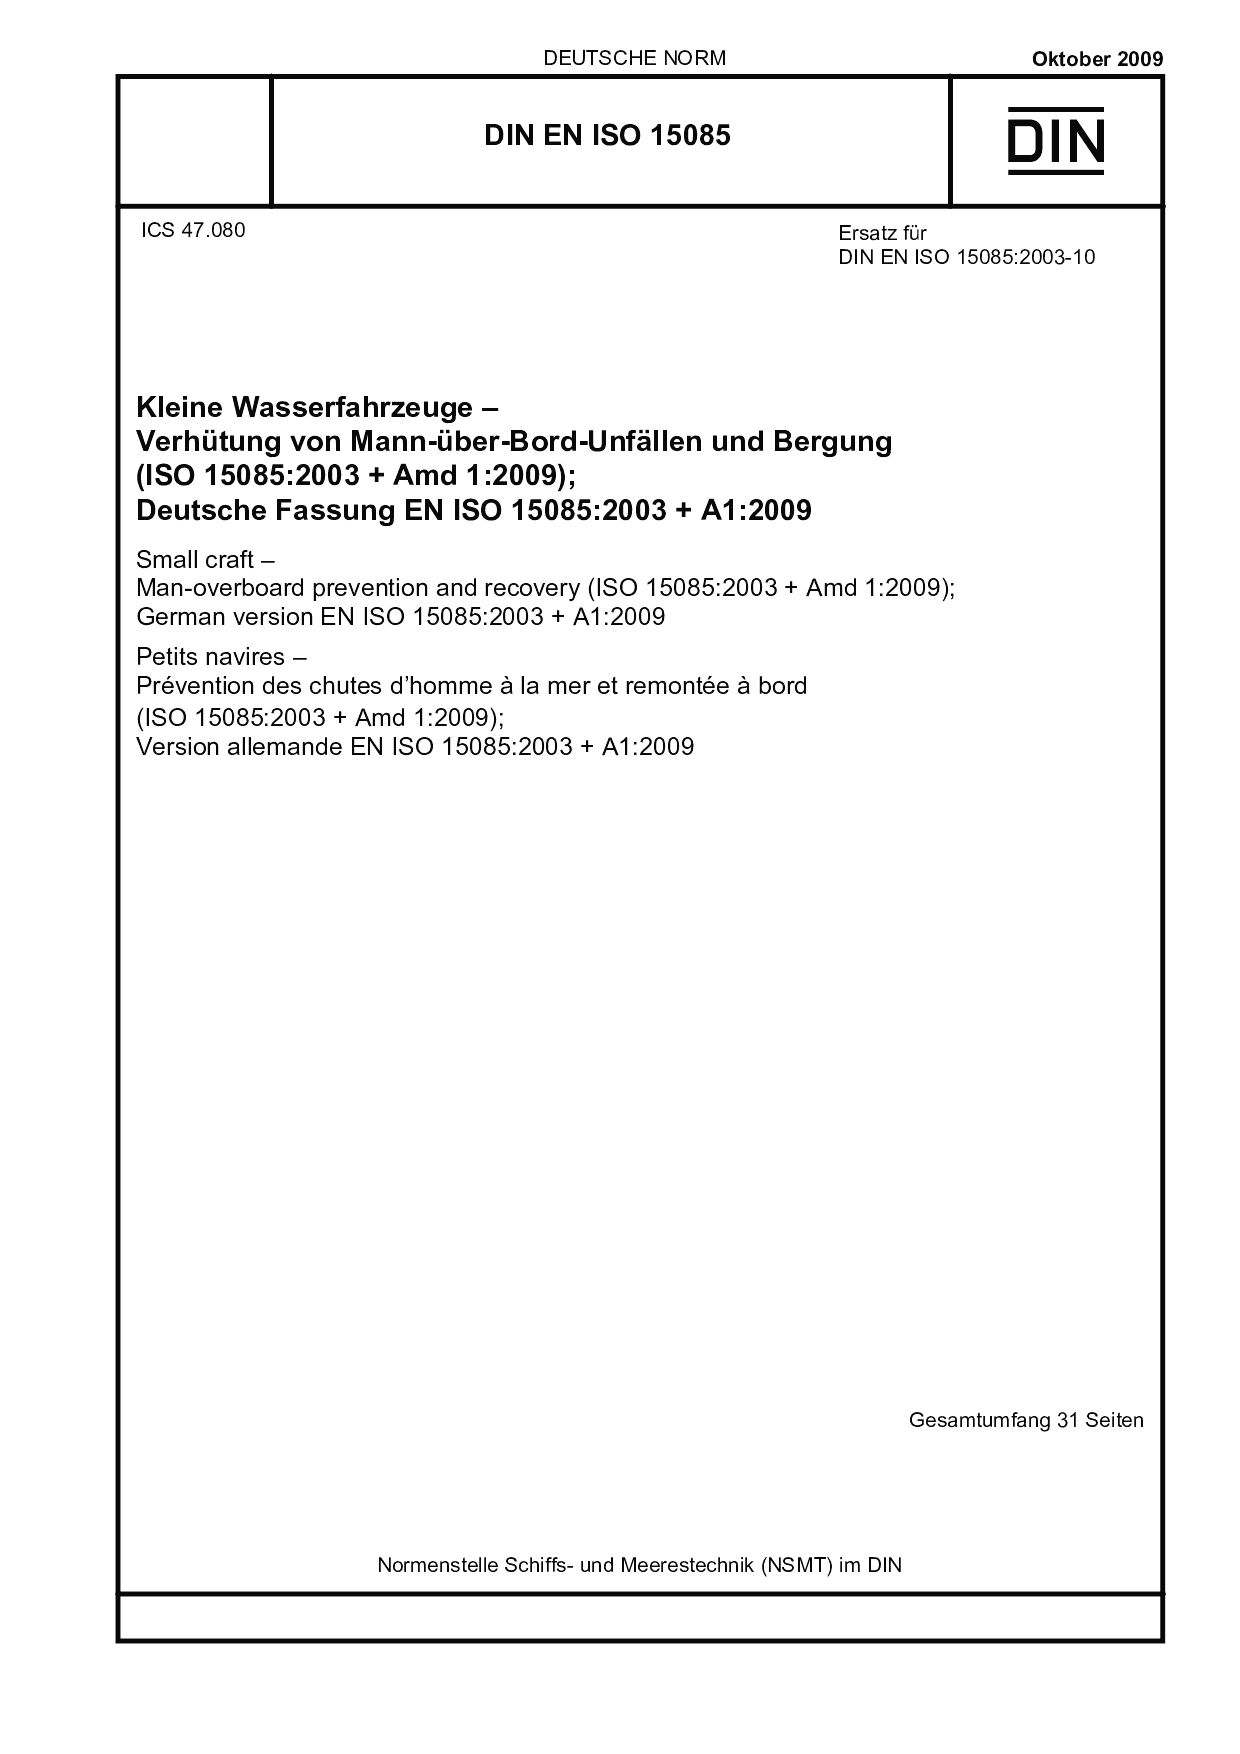 DIN EN ISO 15085:2009封面图